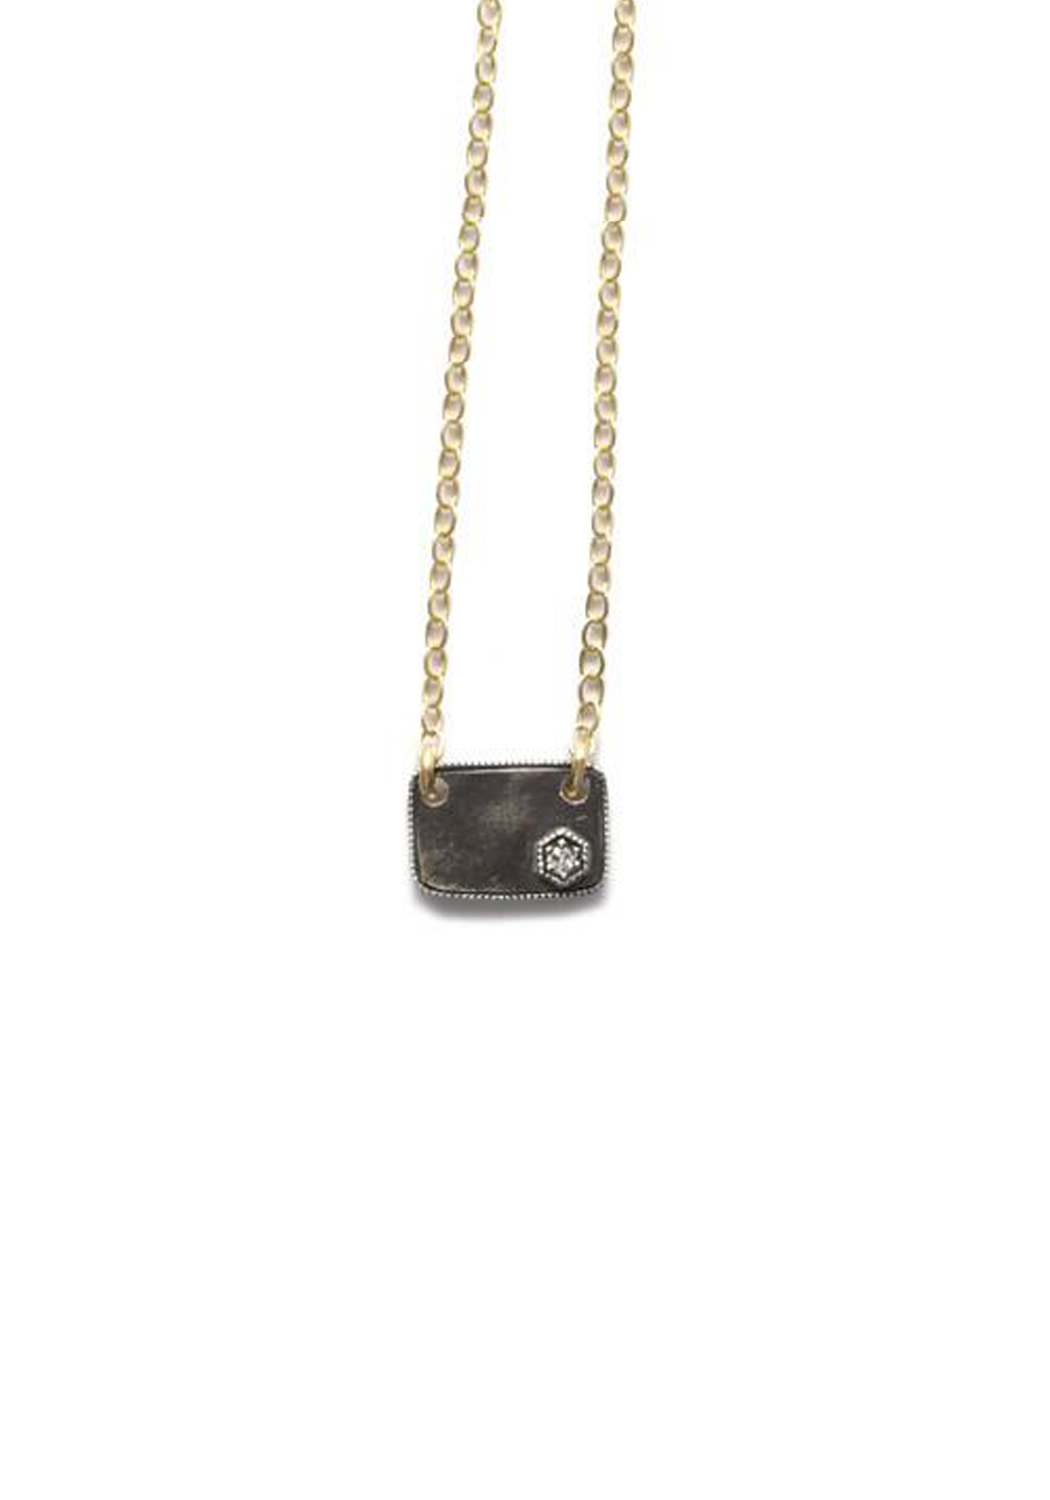 ILA Damali 14KYG Blackened Silver Diamond Tag Charm Necklace | OsterJewelers.com